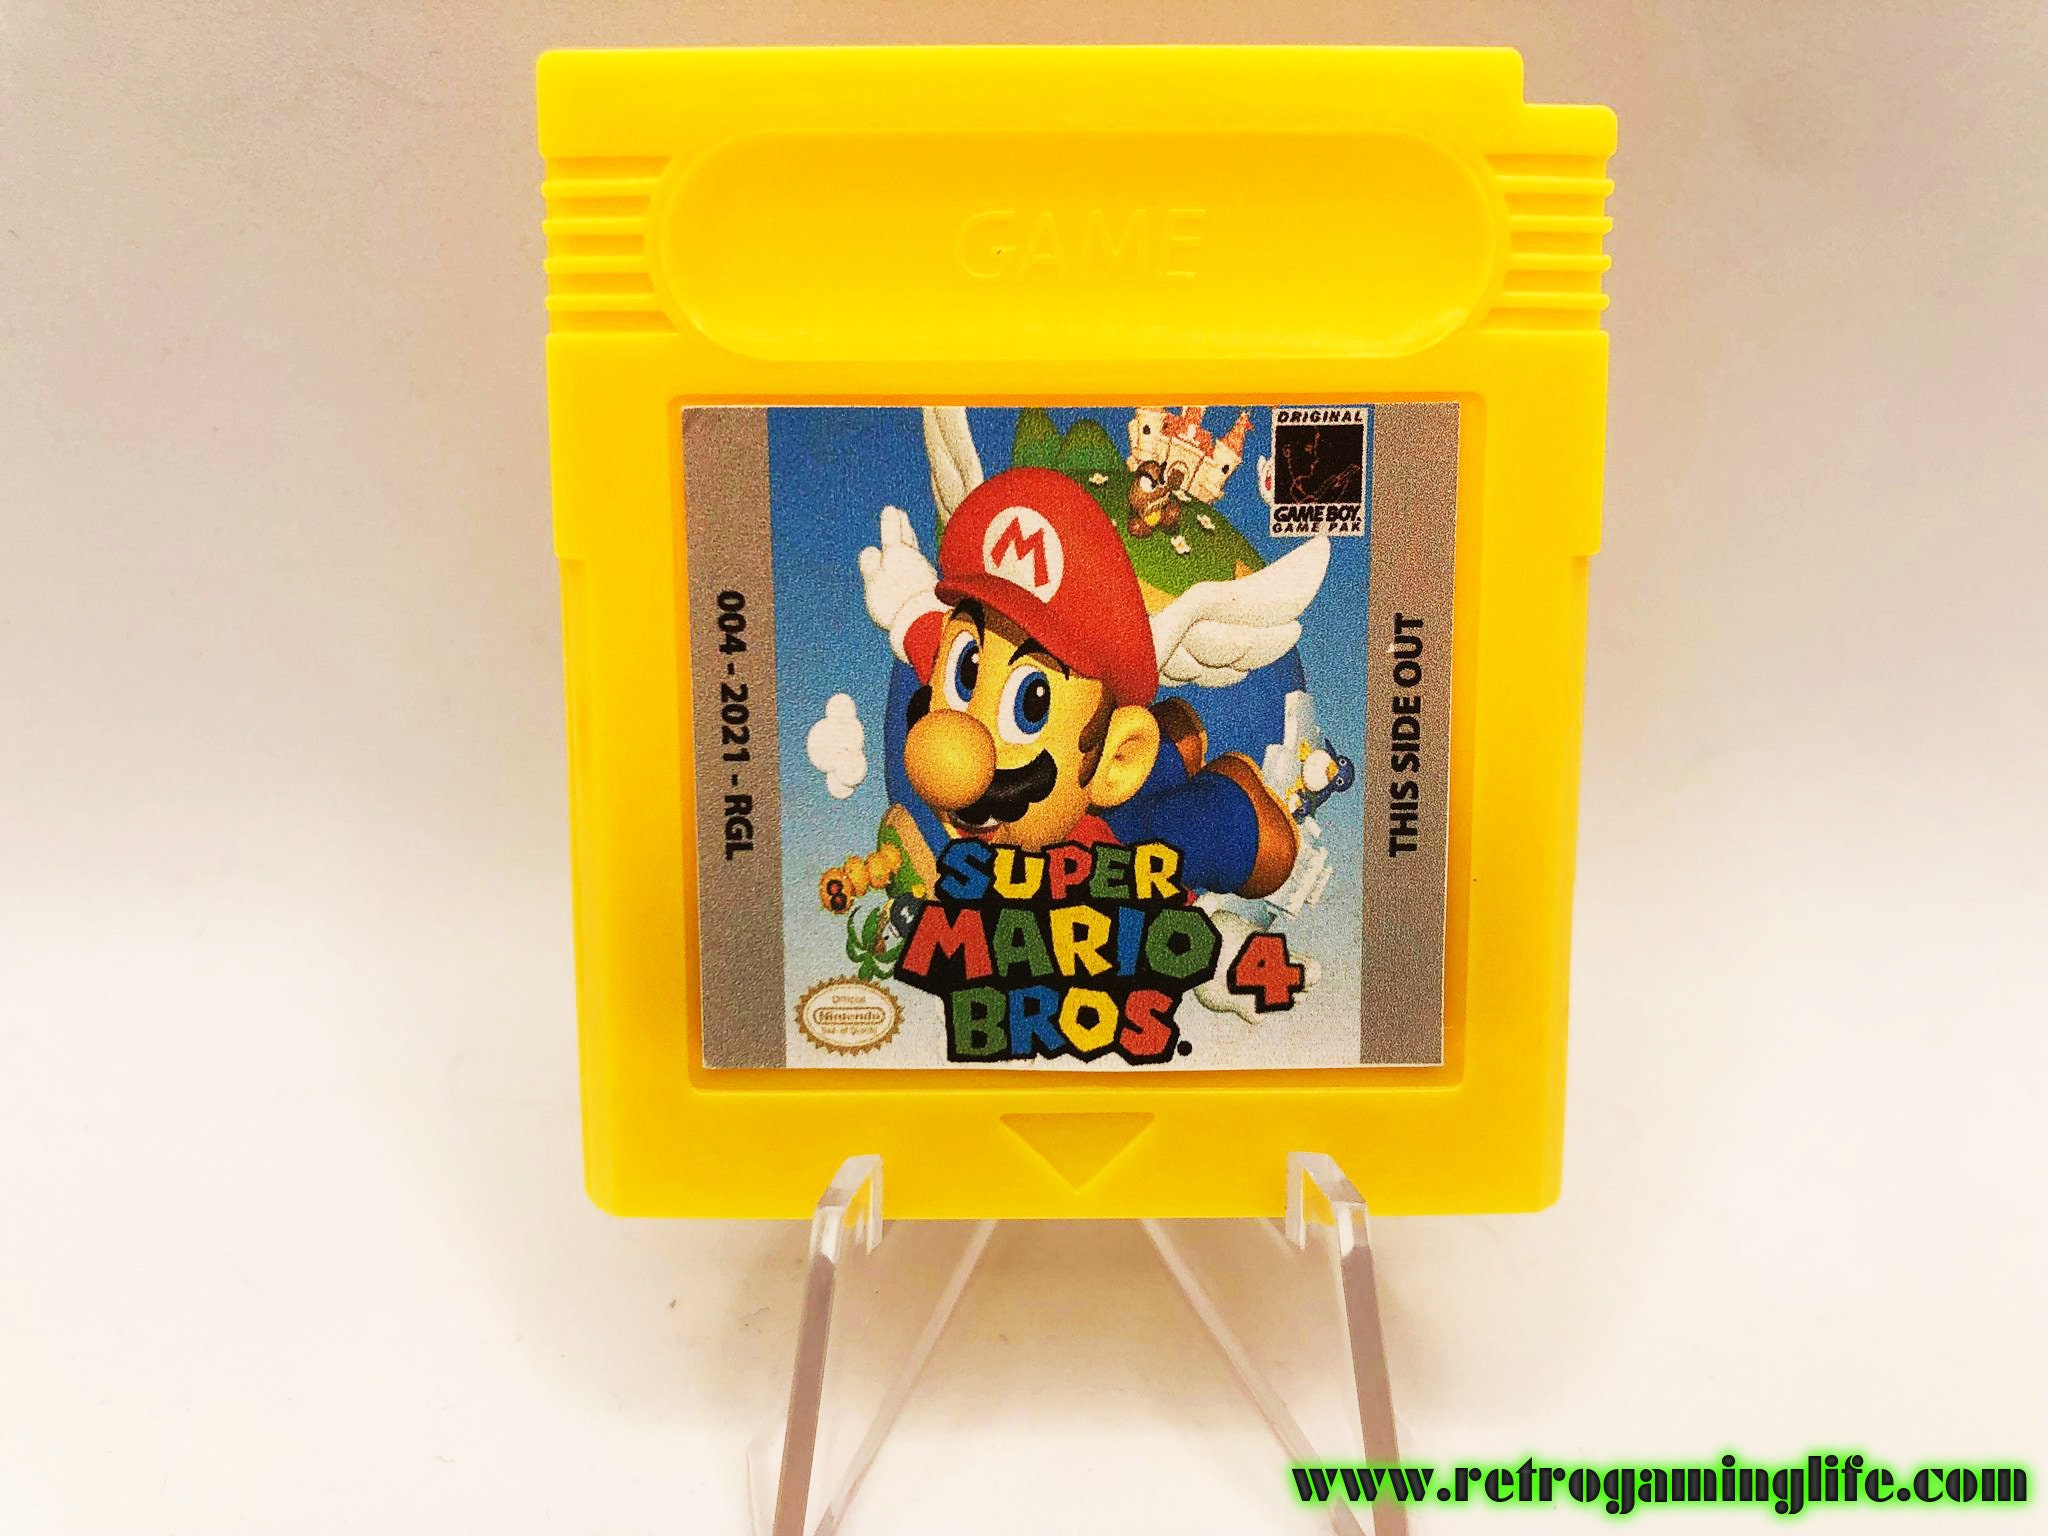 Mario Tennis Game Boy Color - Jeux Vidéo